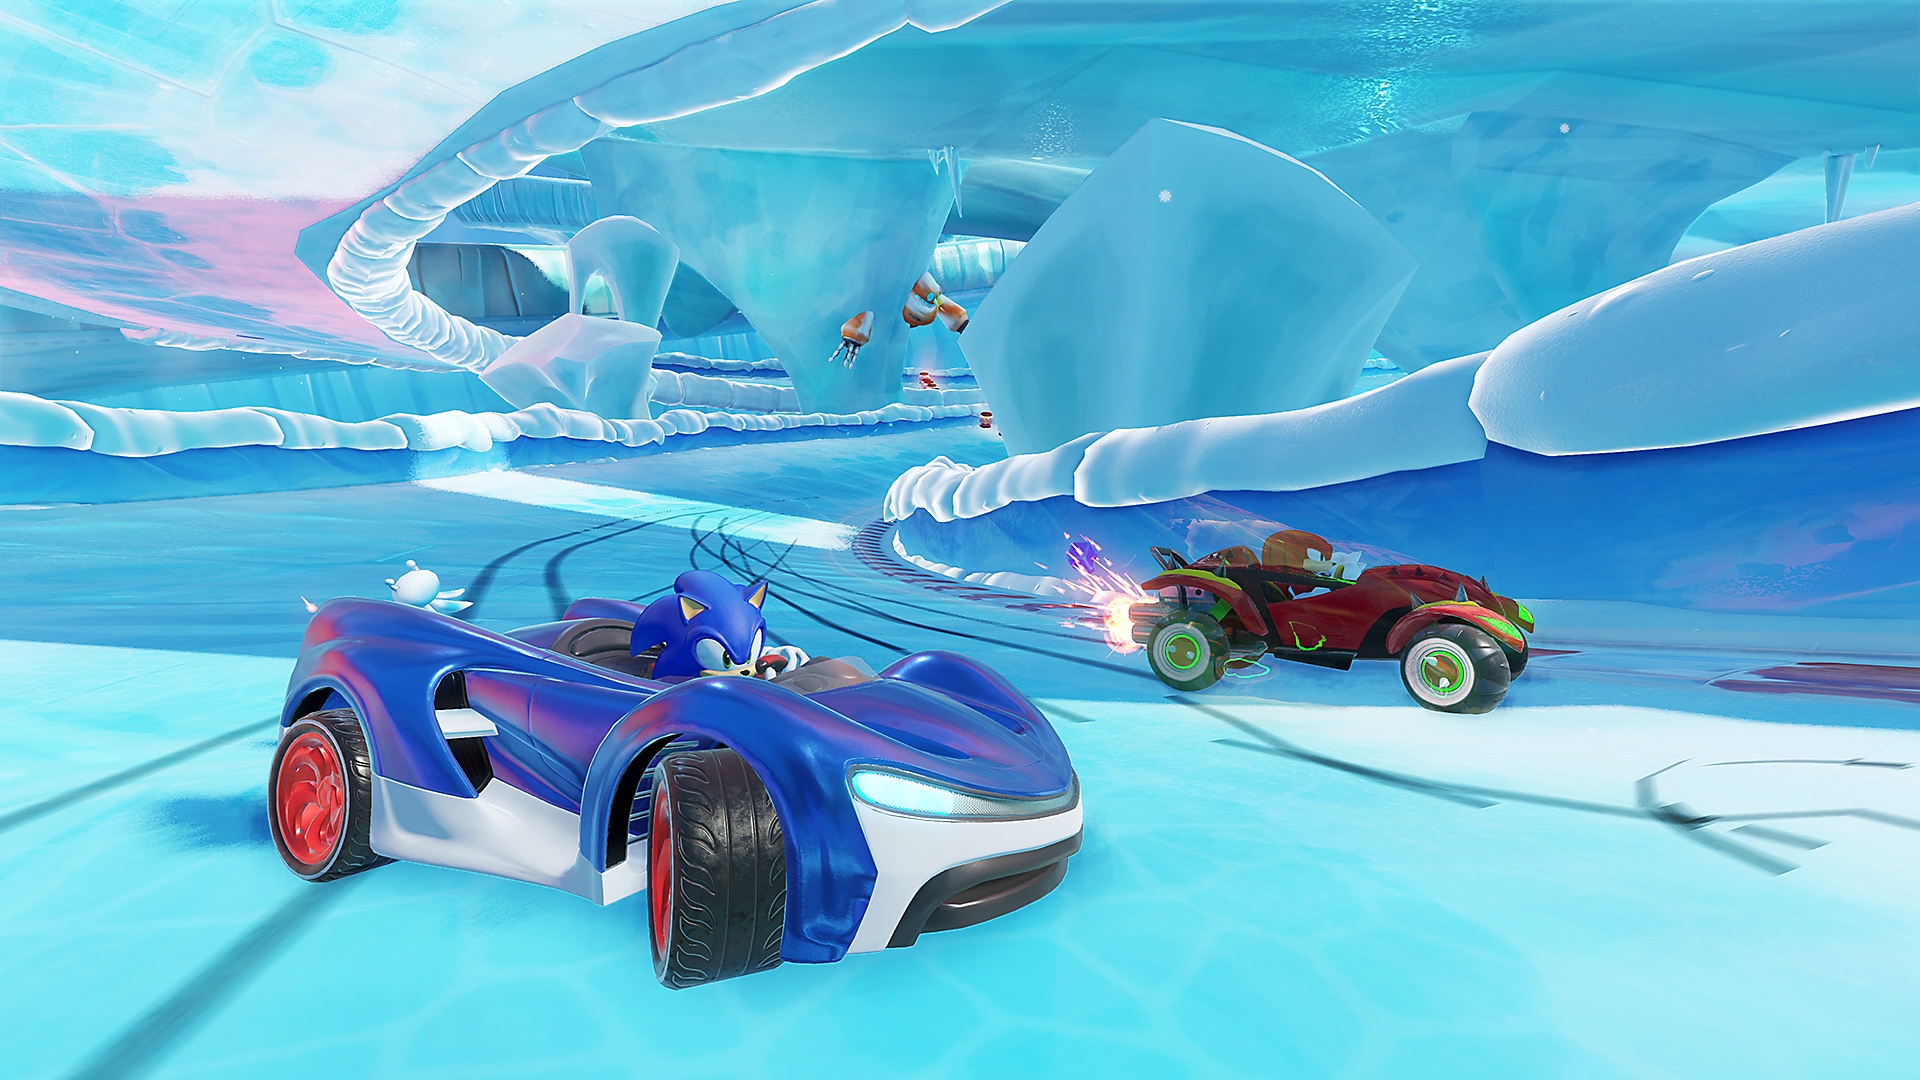 Captura de pantalla de Team Sonic Racing que muestra a Sonic compitiendo en un auto de carreras azul en un circuito helado